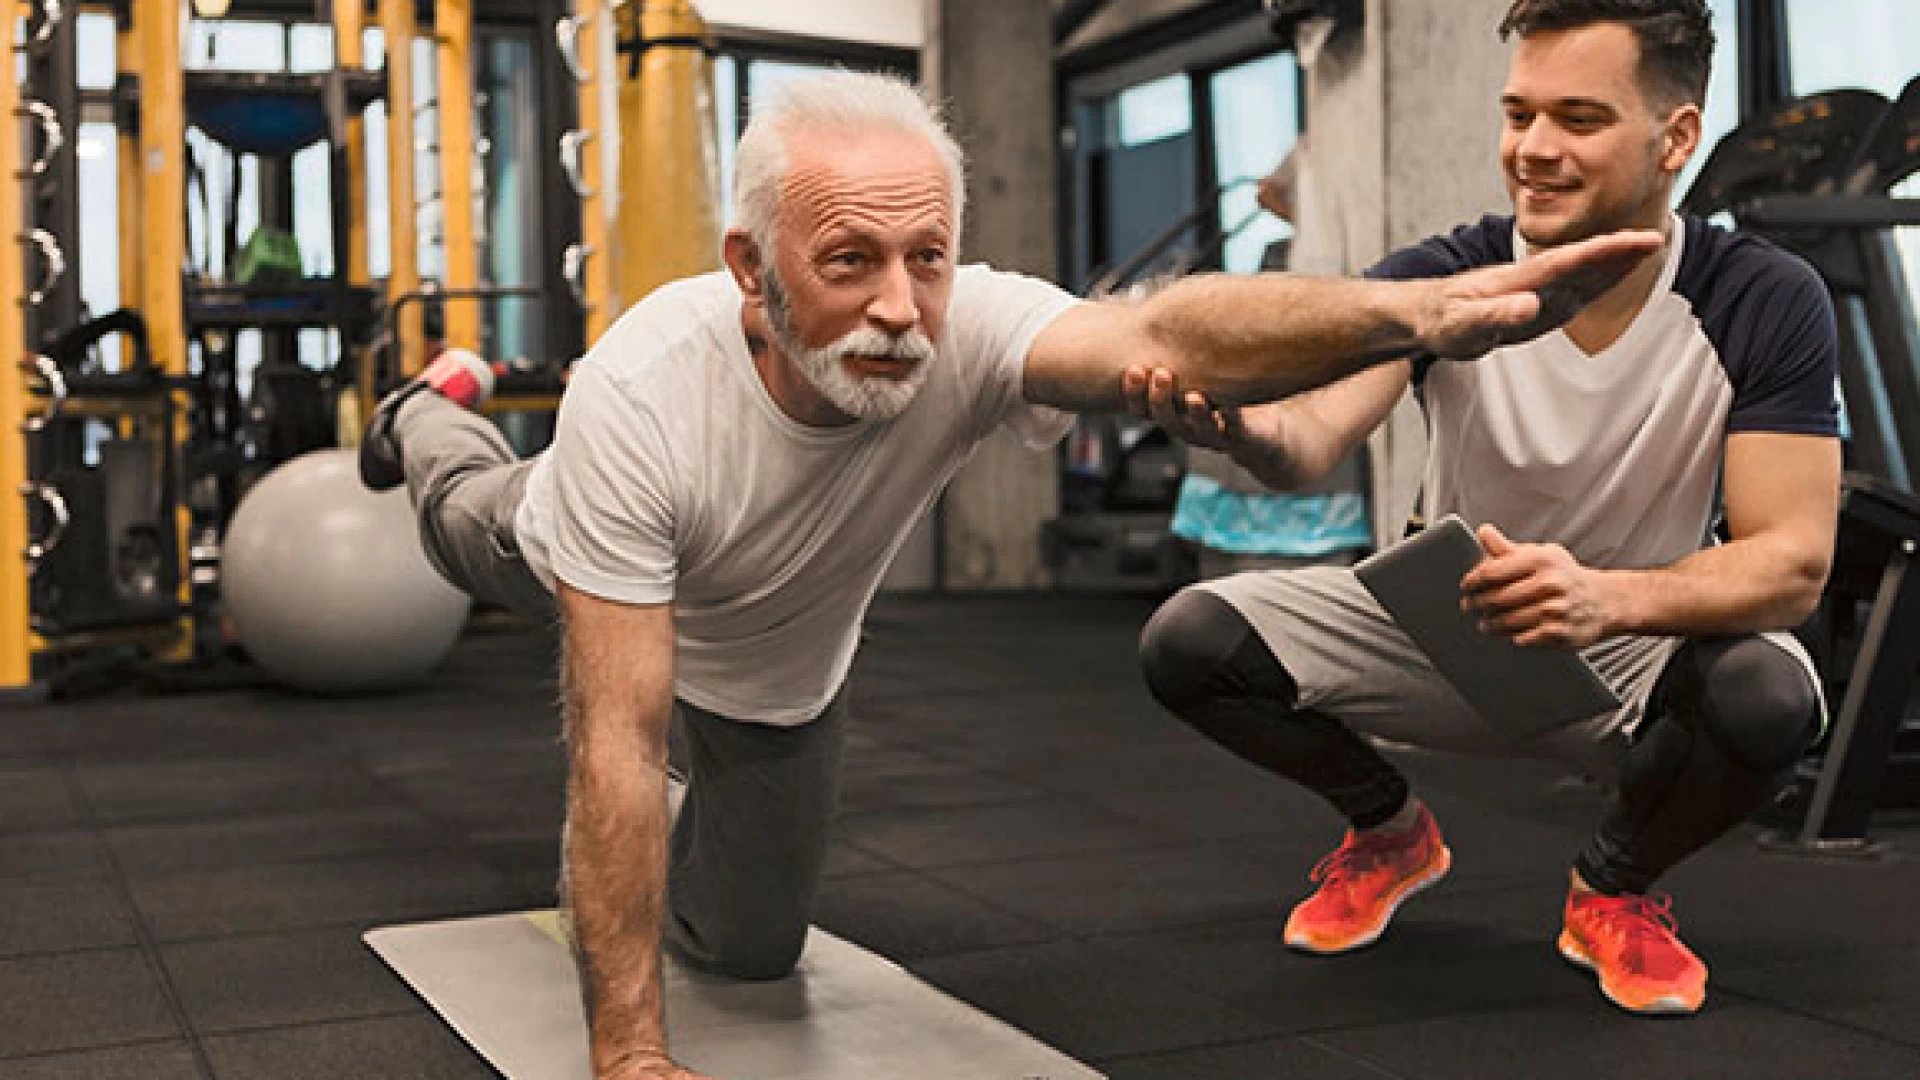 Anni in Movimento 2021, al via i corsi gratuiti di ginnastica e benessere per gli over 60.